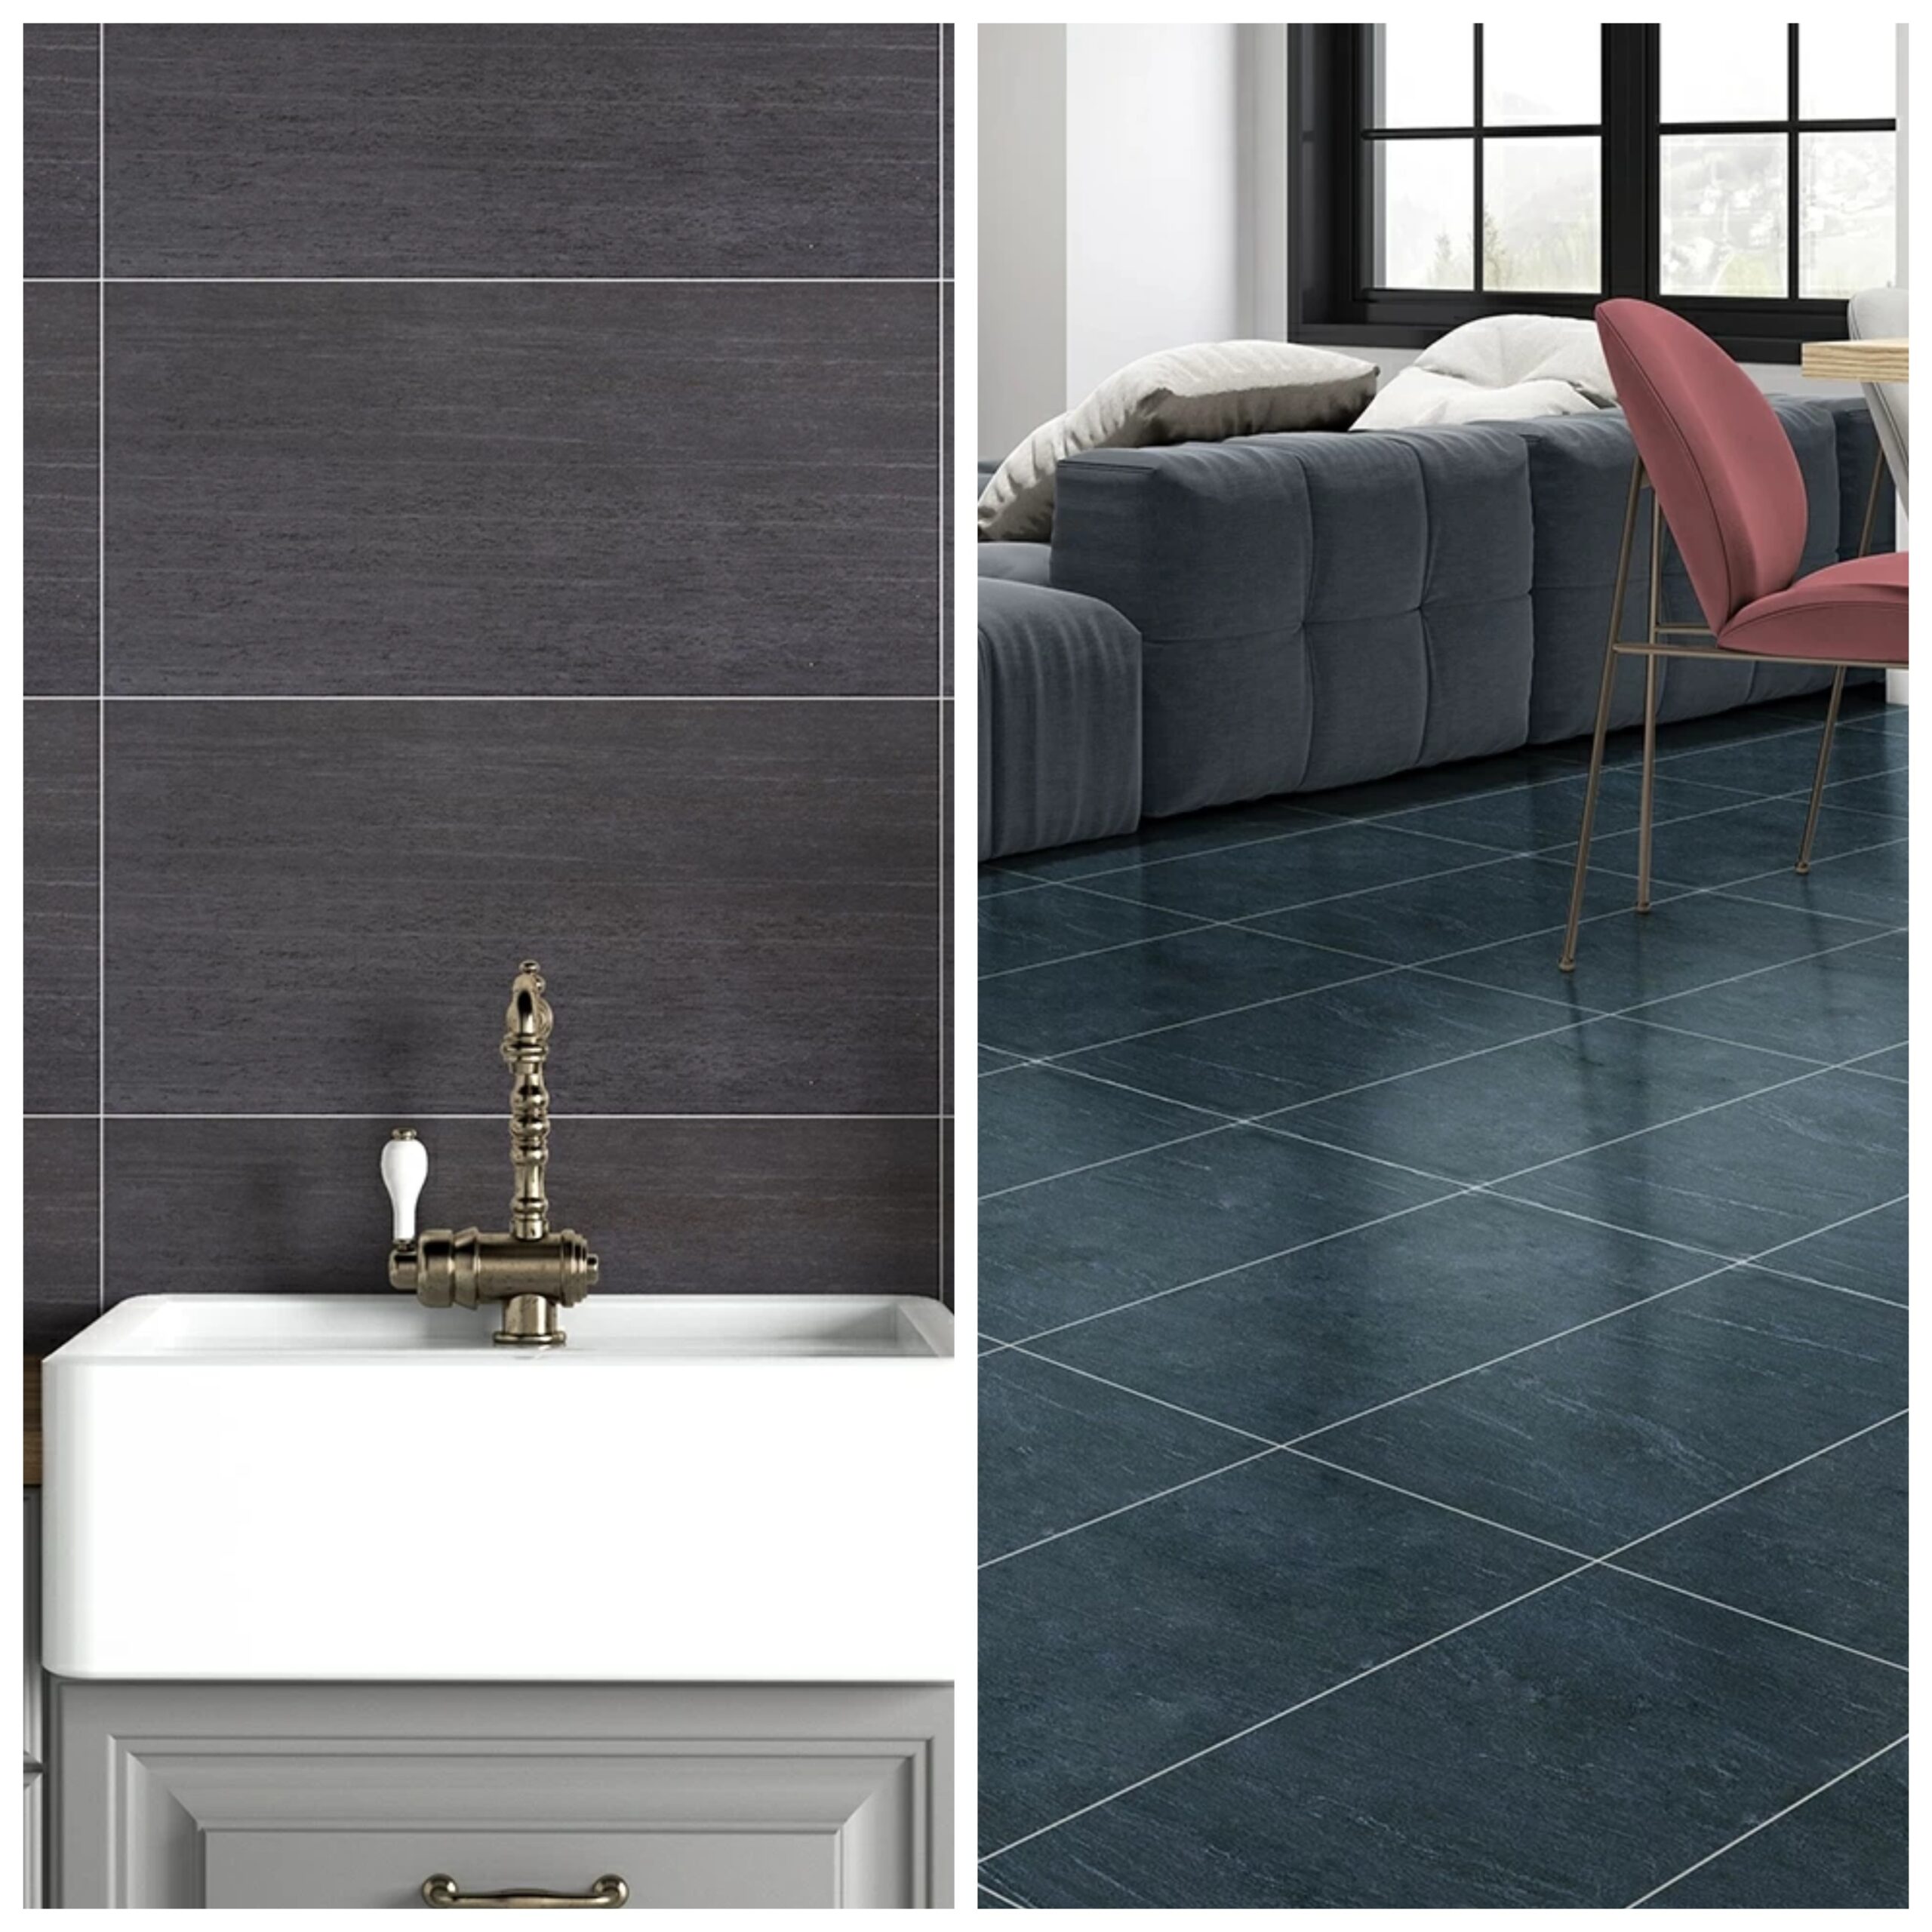 Floor Elegance: Bathroom & Floor Tiles by Kasa Ceramic